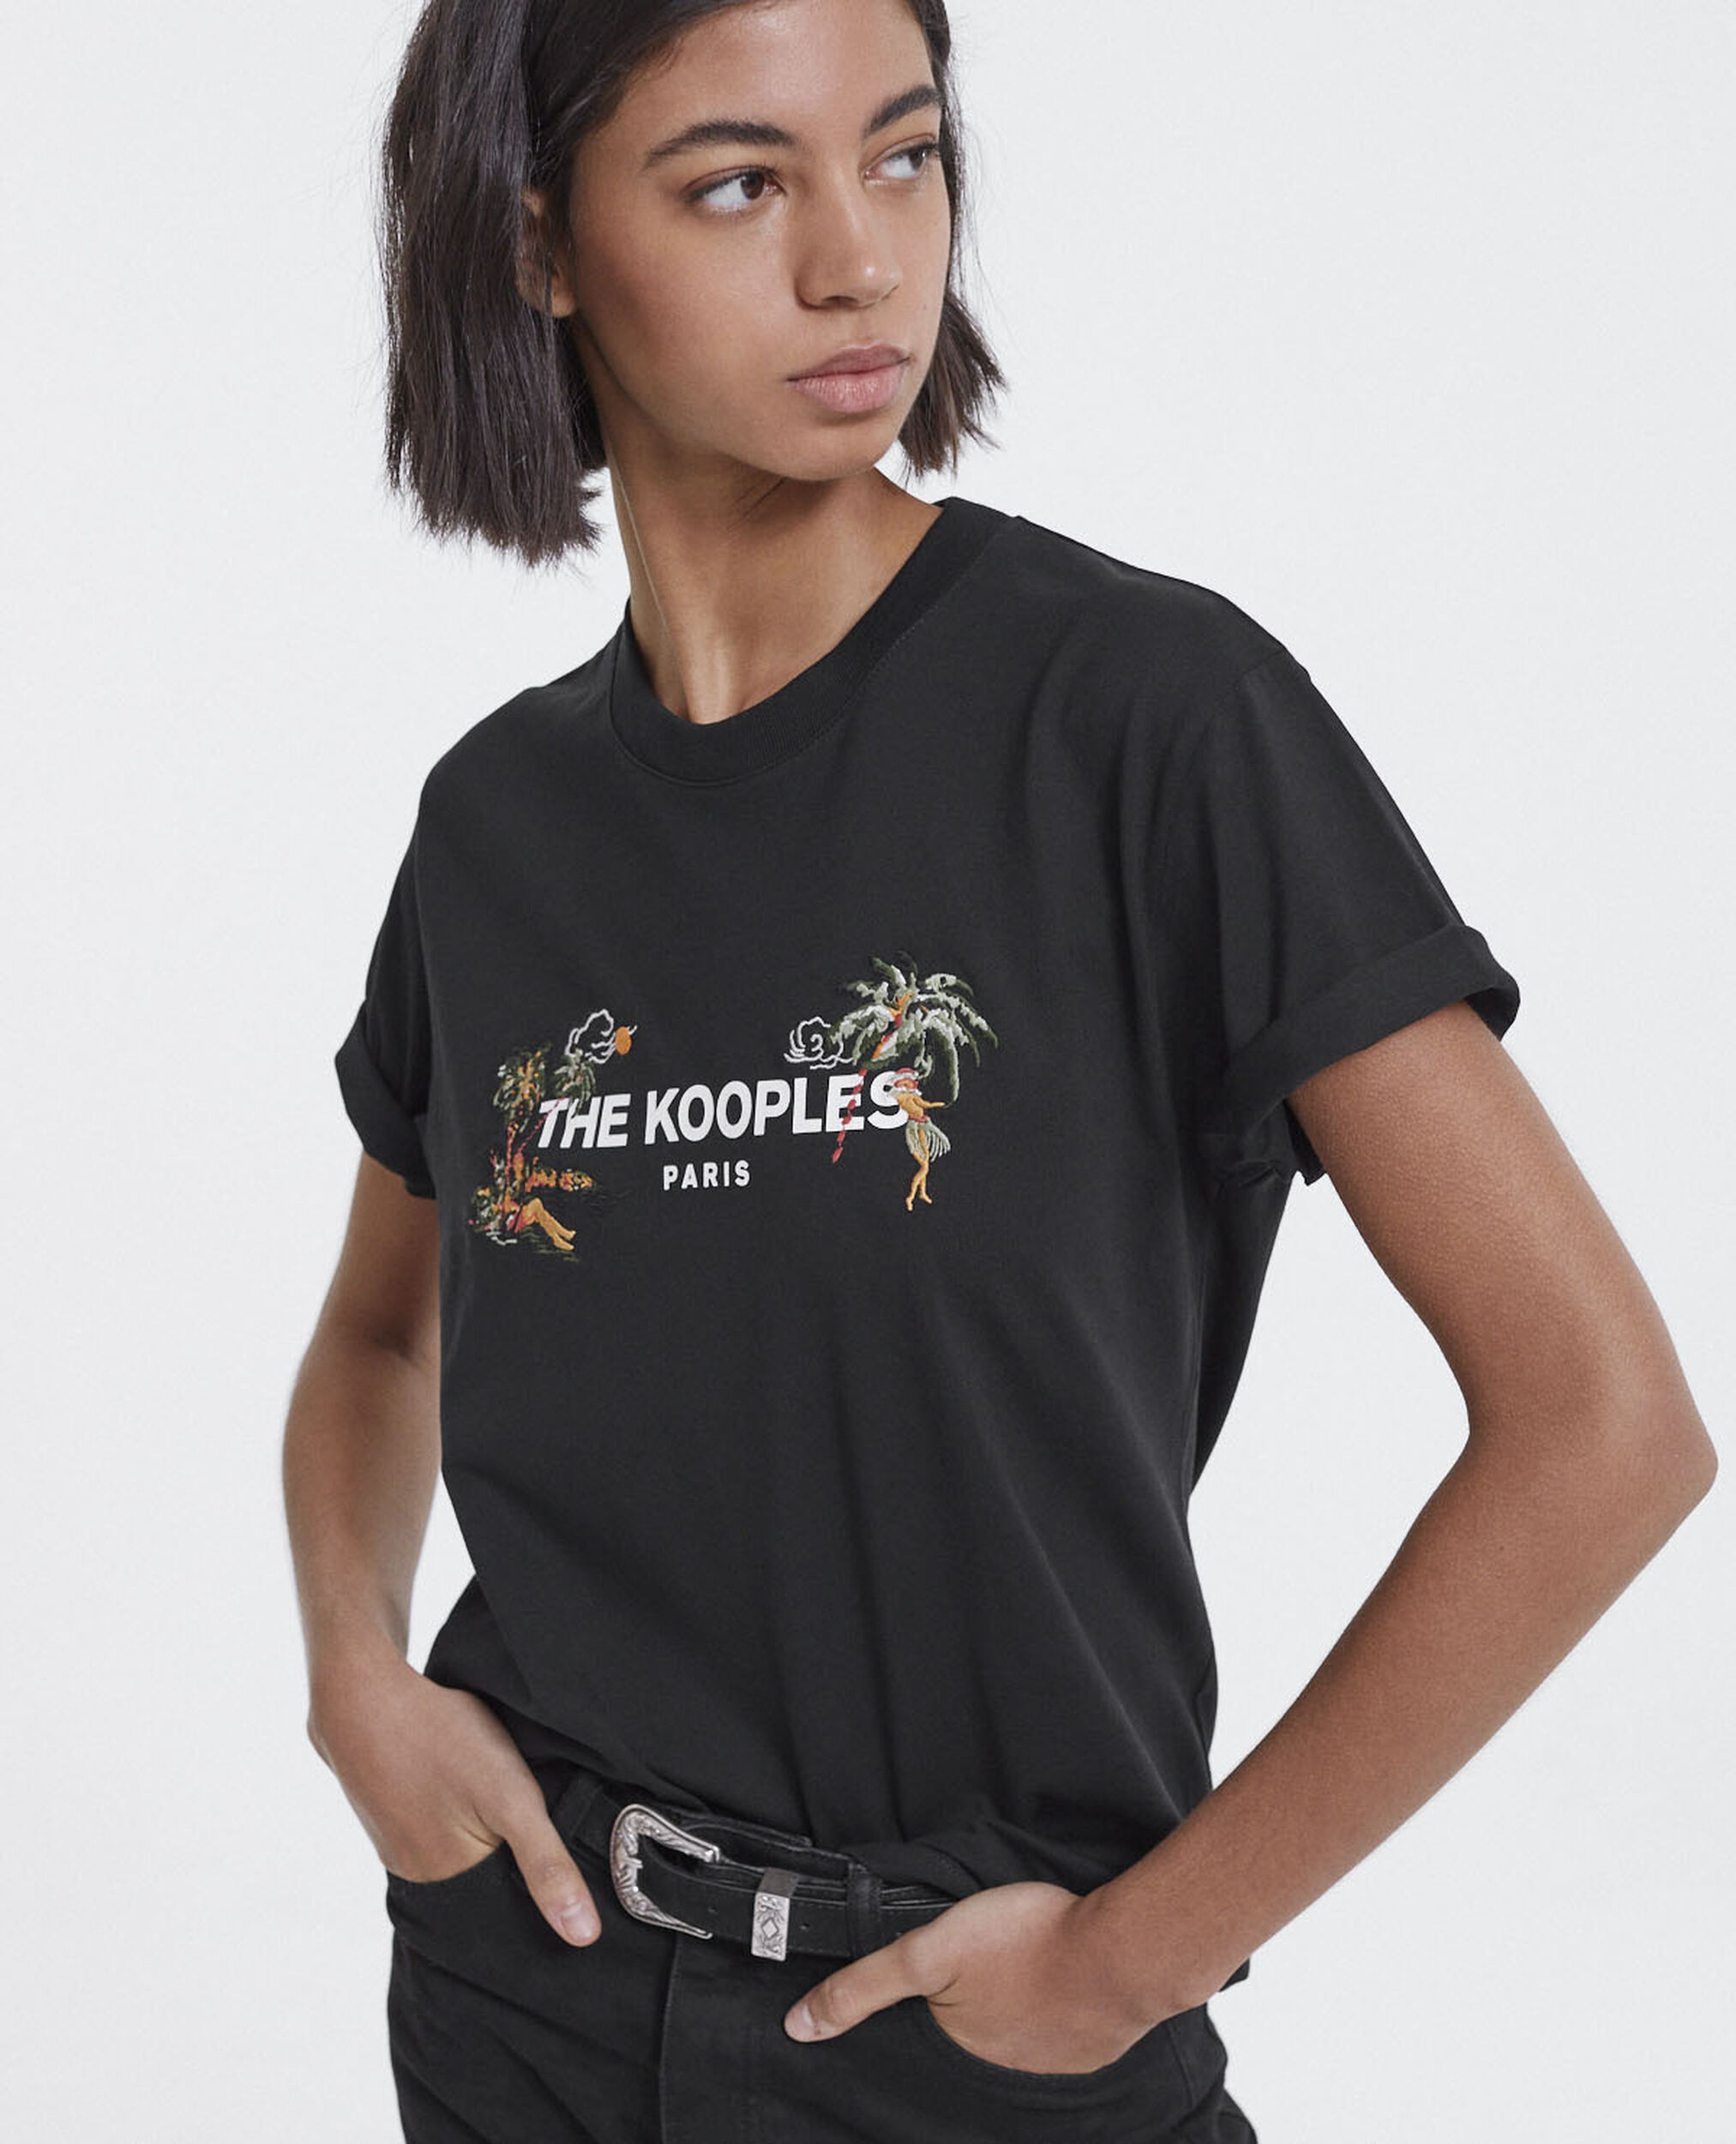 Camiseta negra bordada The Kooples blanco, BLACK, hi-res image number null